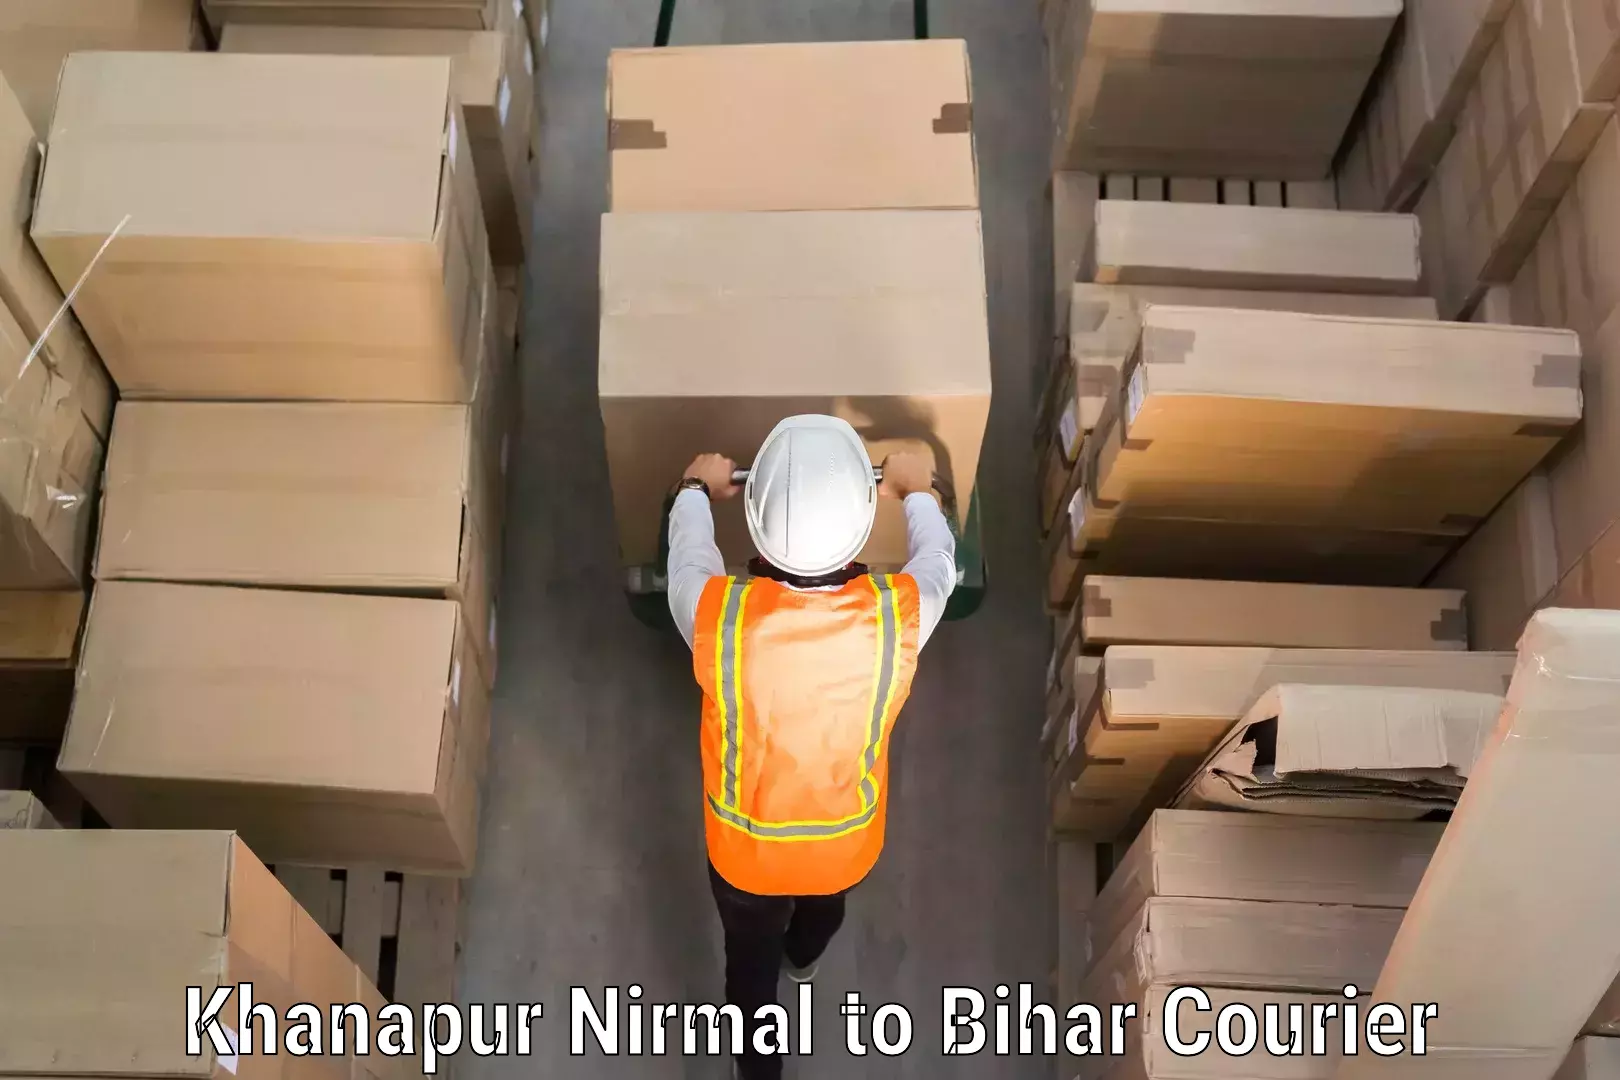 Baggage shipping service Khanapur Nirmal to Brahmapur